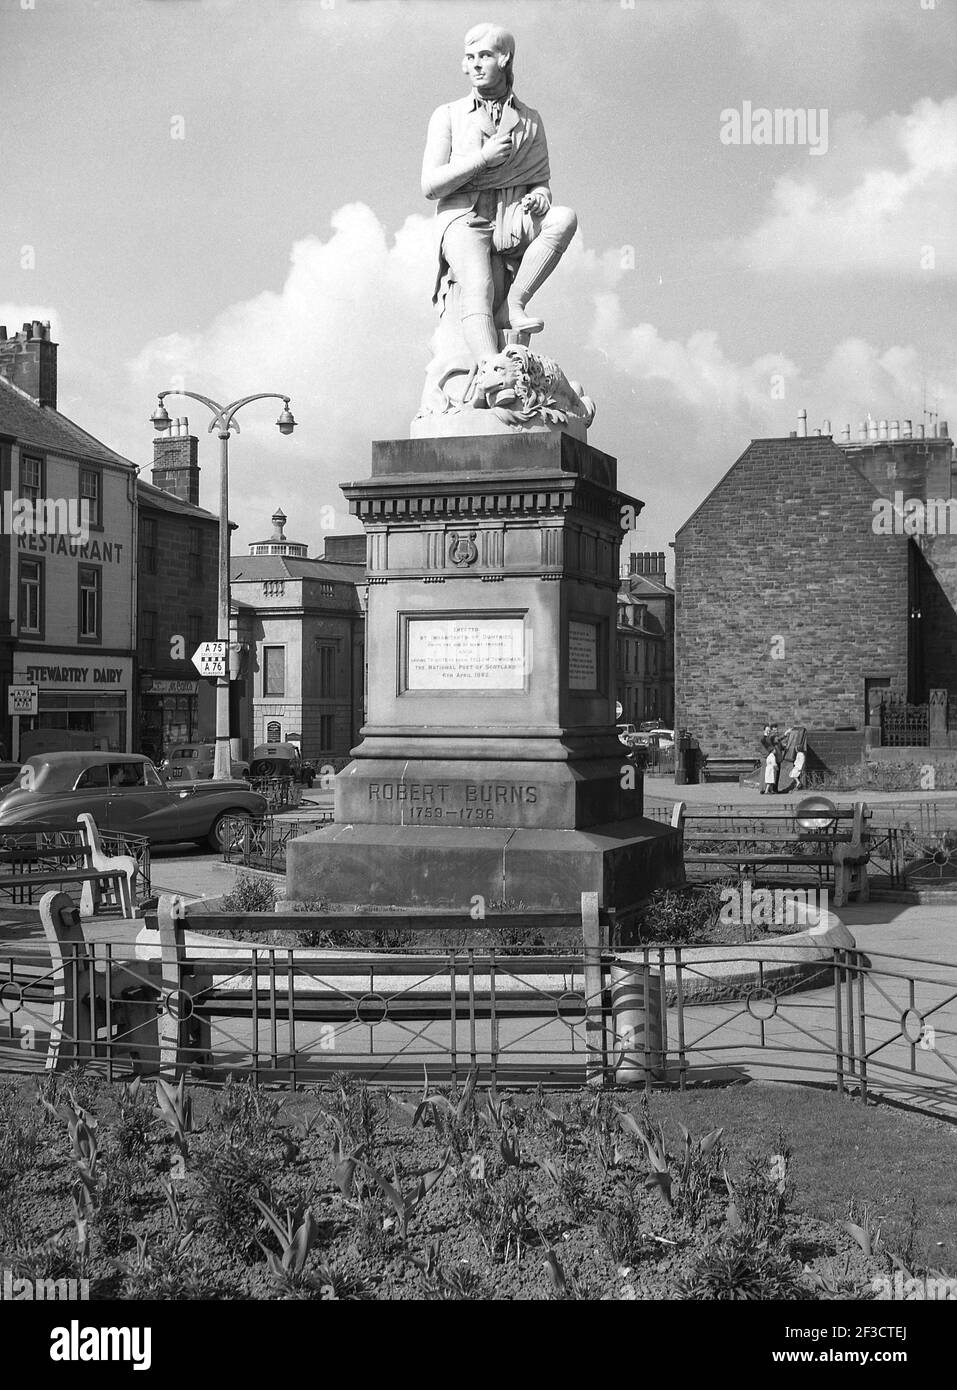 1961, historisch, eine Statue zu Ehren des schottischen Schriftstellers und Nationaldichters Robert Burns, auf dem Platz der Marktstadt Dumries, Schottland, wo er von 1791 bis 1796 lebte. Entworfen von Amelia Robertson Hill, wurde die Statue 1882 in Carrara, Italien, gemeißelt. Stockfoto